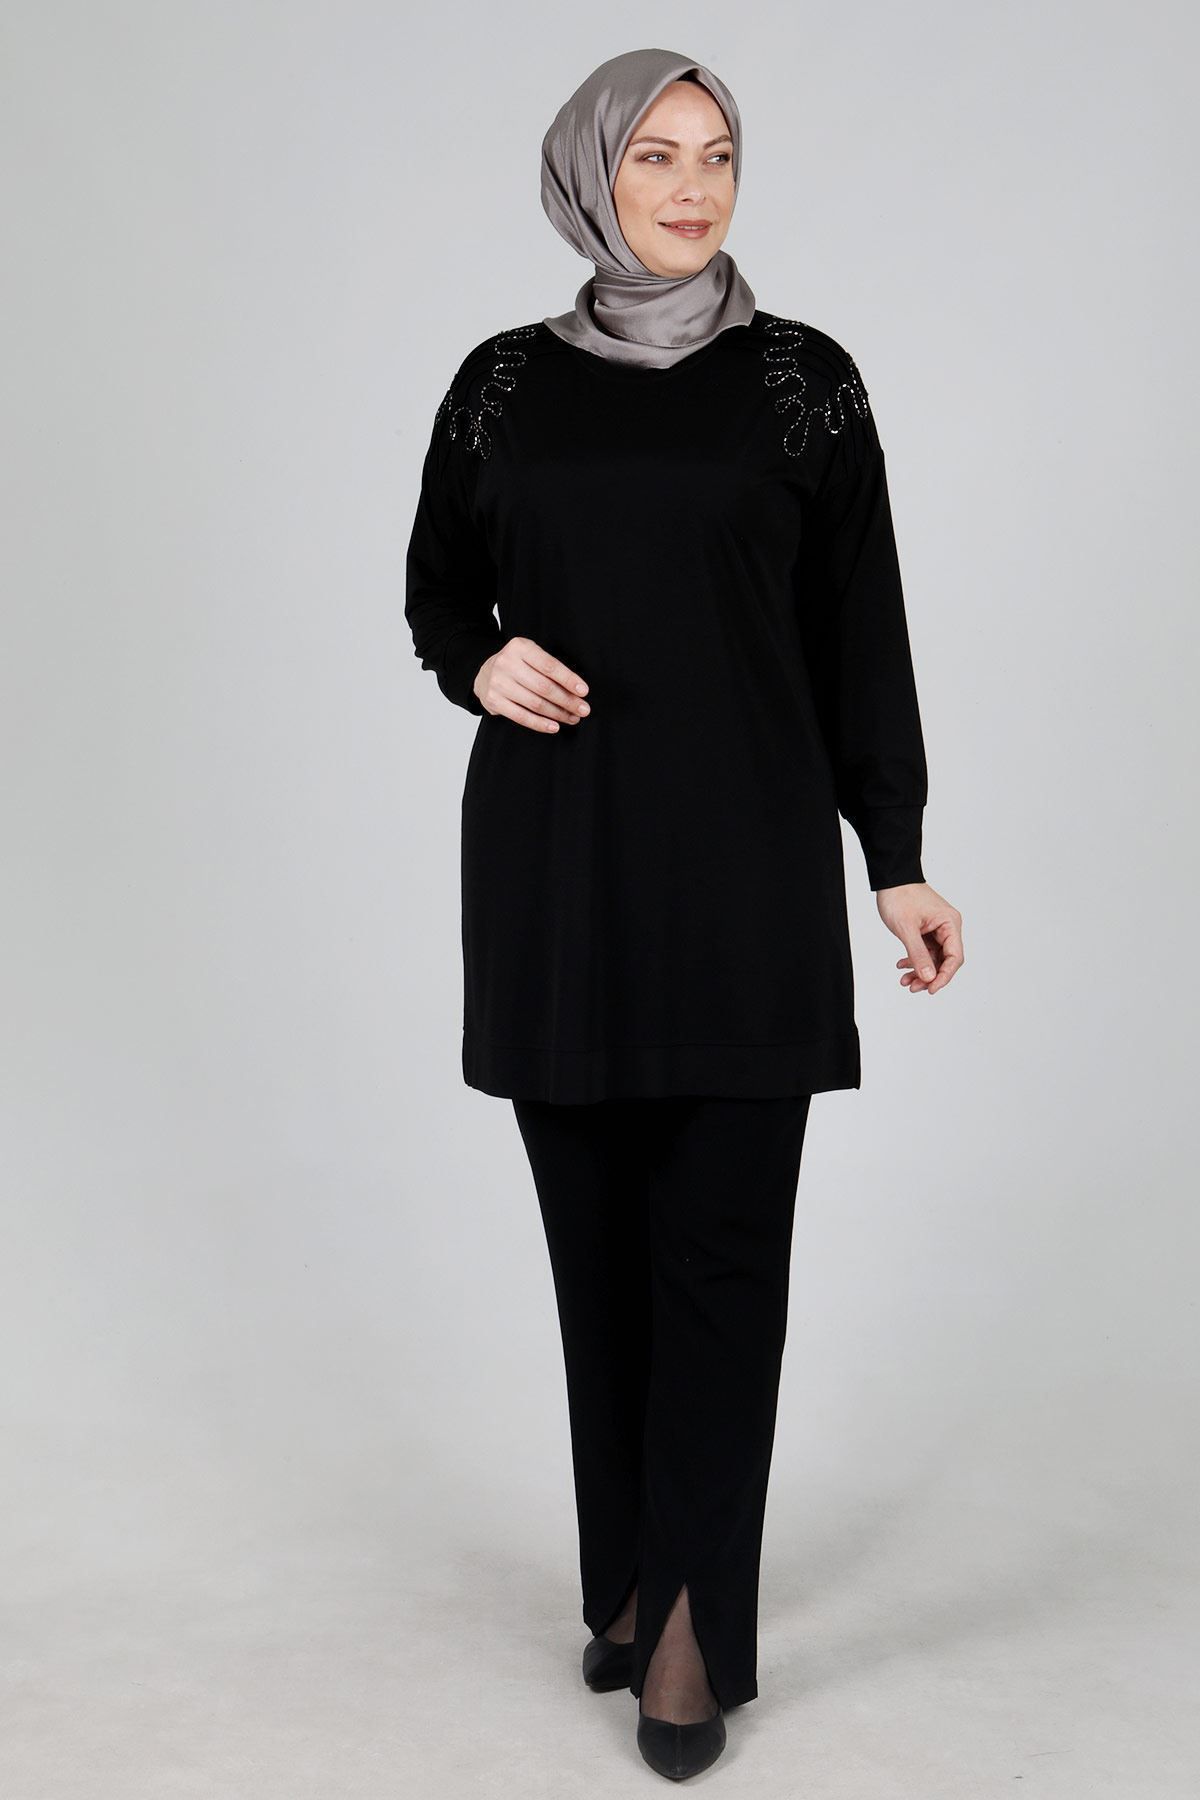 ottoman wear OTW20100 Büyük Beden Tunik Siyah